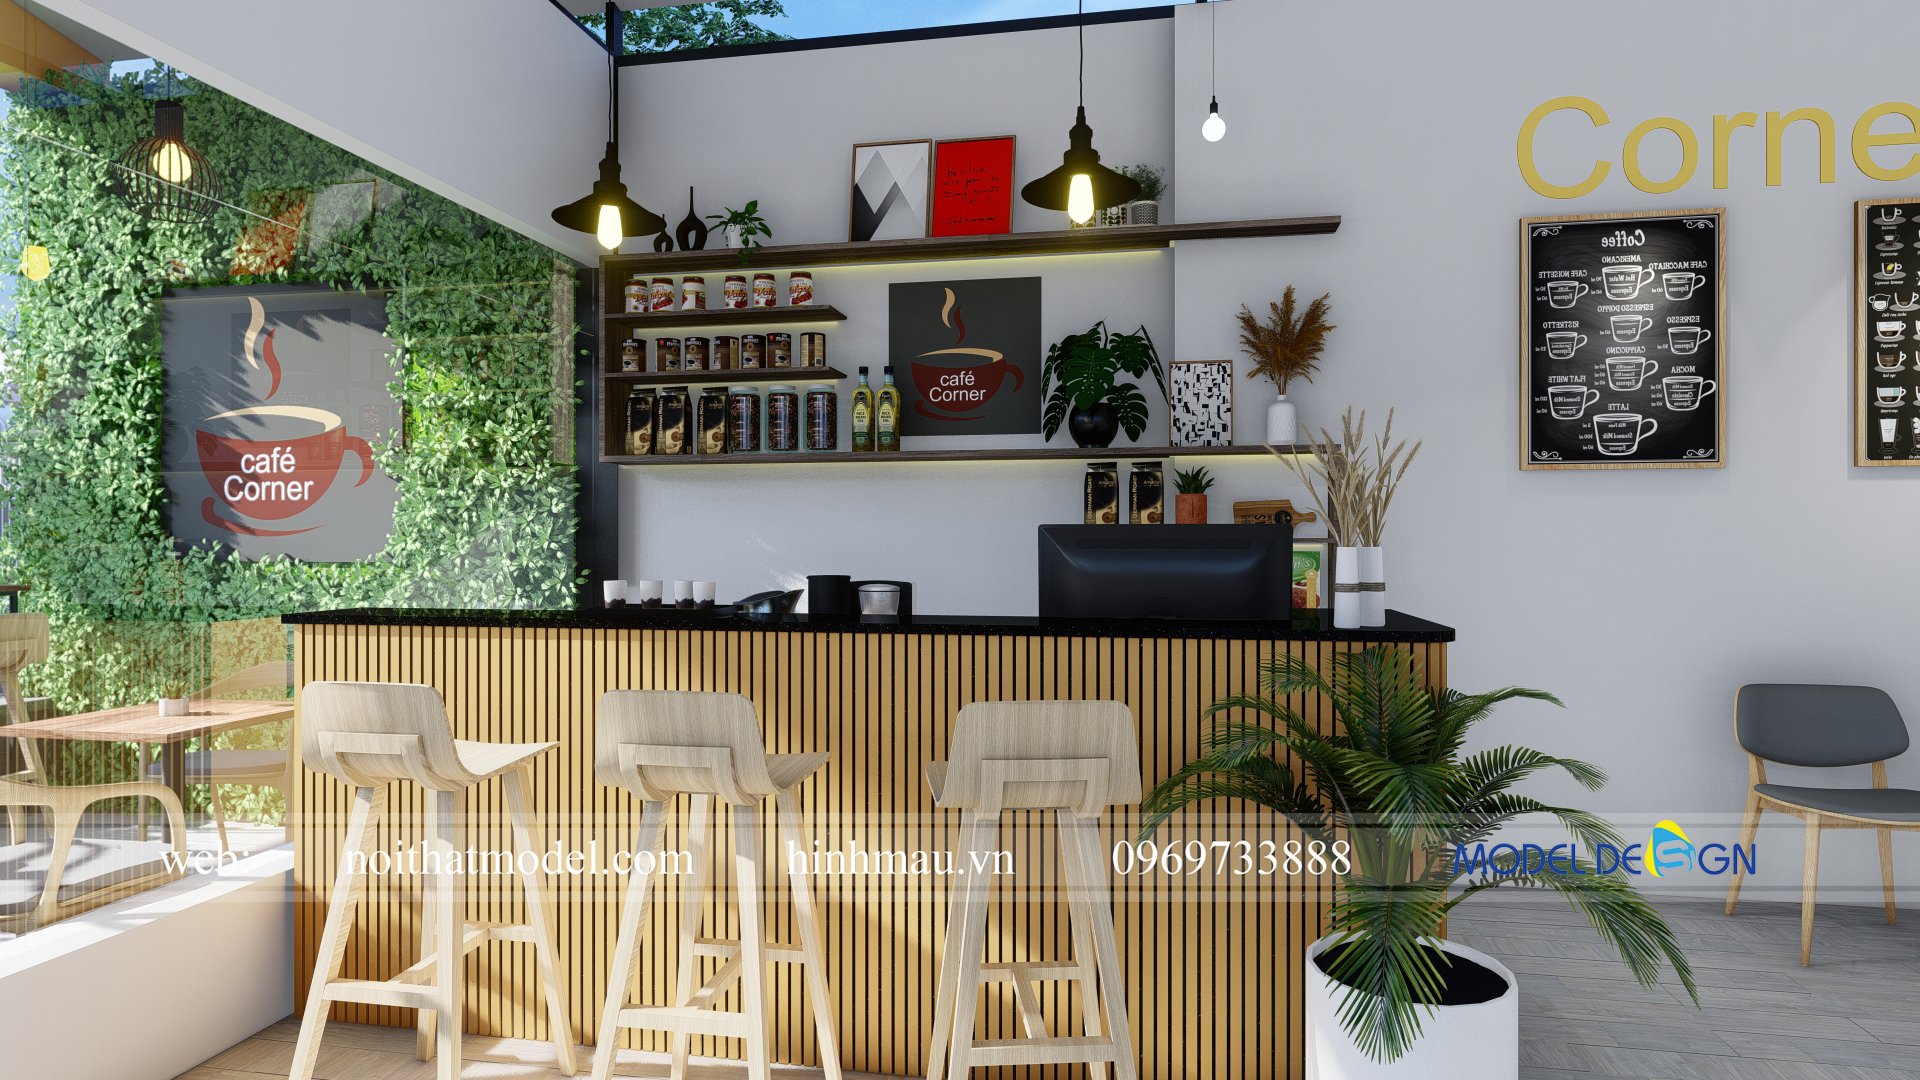 Gợi ý thiết kế quán cafe mặt tiền 4m tại Gò Vấp TPHCM - Model Design